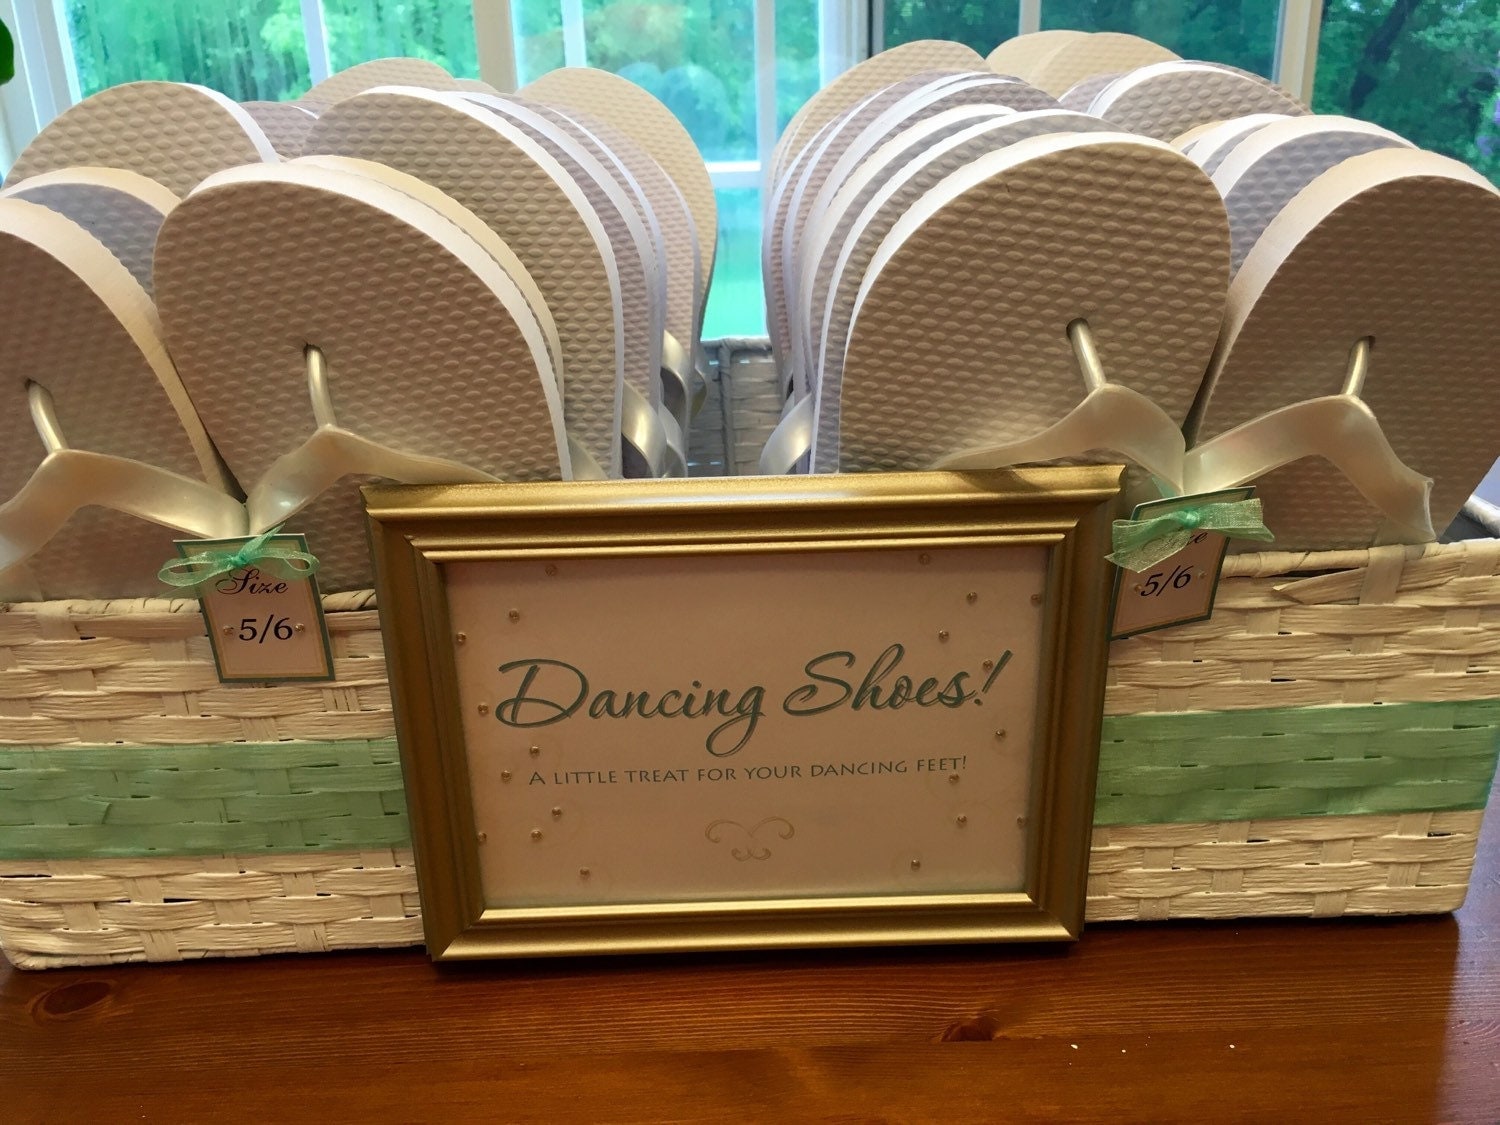 Wedding Reception Flip Flops & Basket for your guests